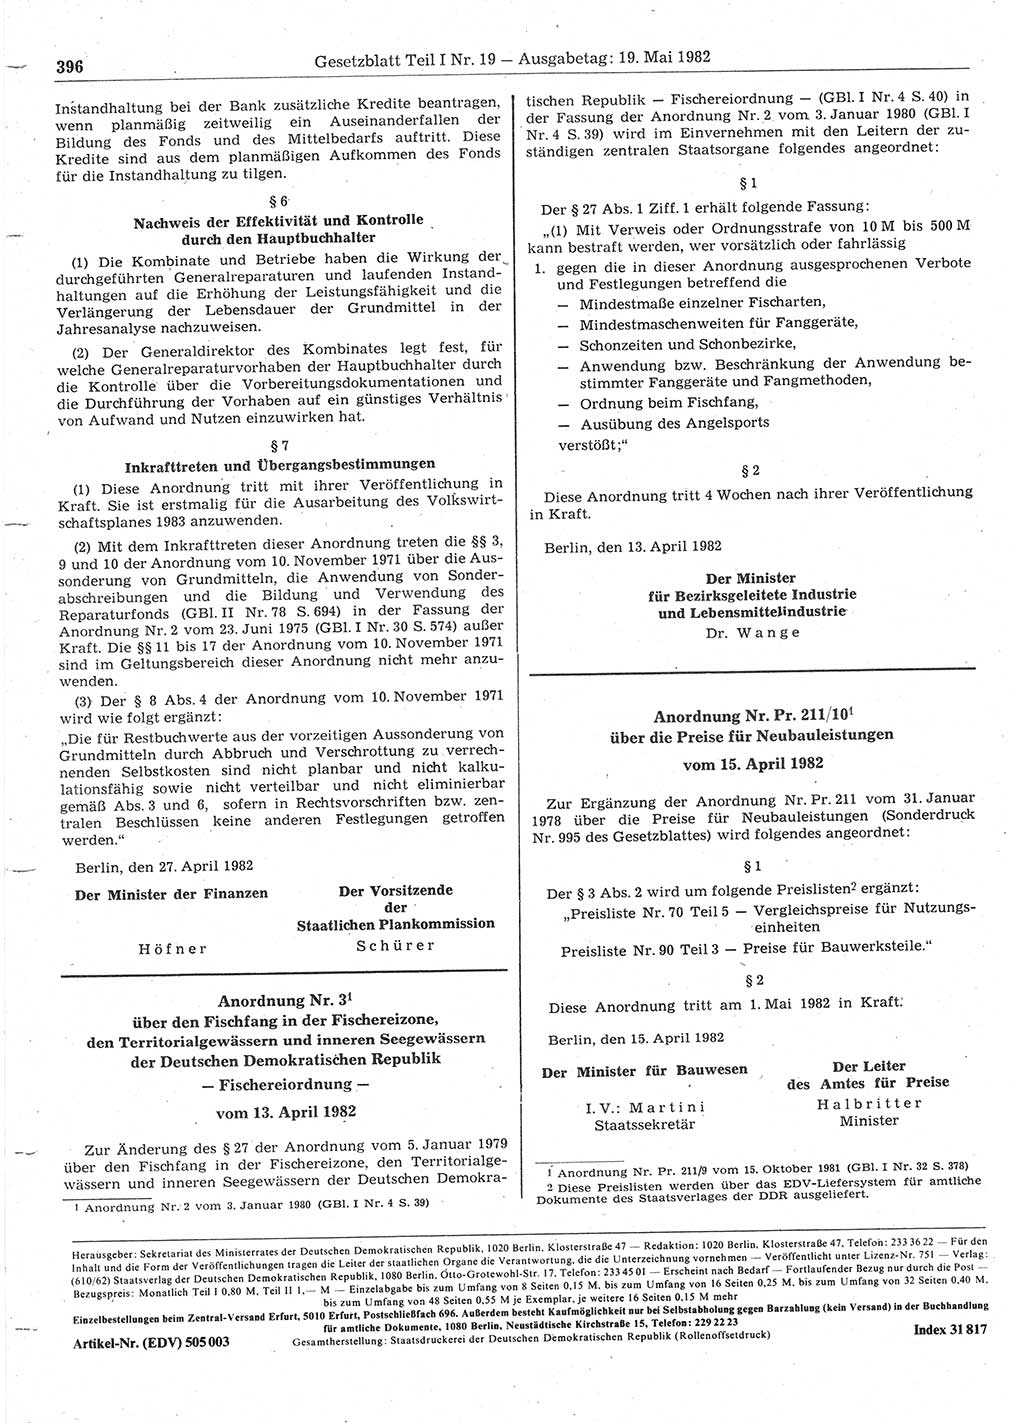 Gesetzblatt (GBl.) der Deutschen Demokratischen Republik (DDR) Teil Ⅰ 1982, Seite 396 (GBl. DDR Ⅰ 1982, S. 396)